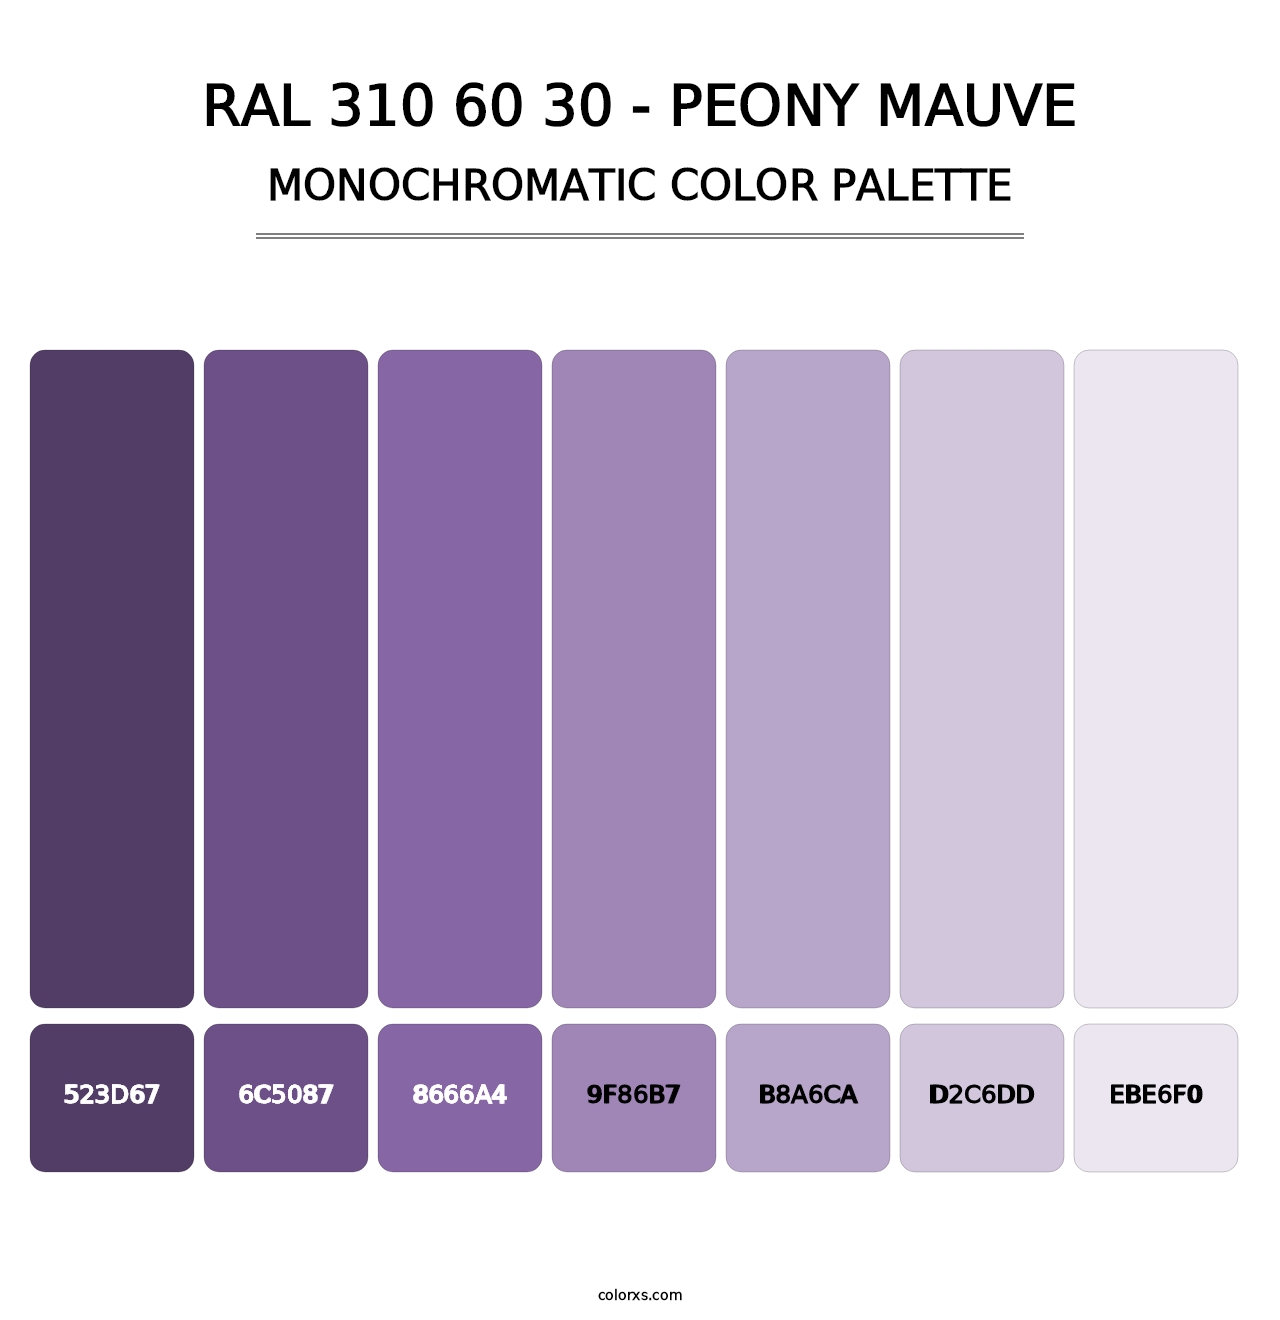 RAL 310 60 30 - Peony Mauve - Monochromatic Color Palette